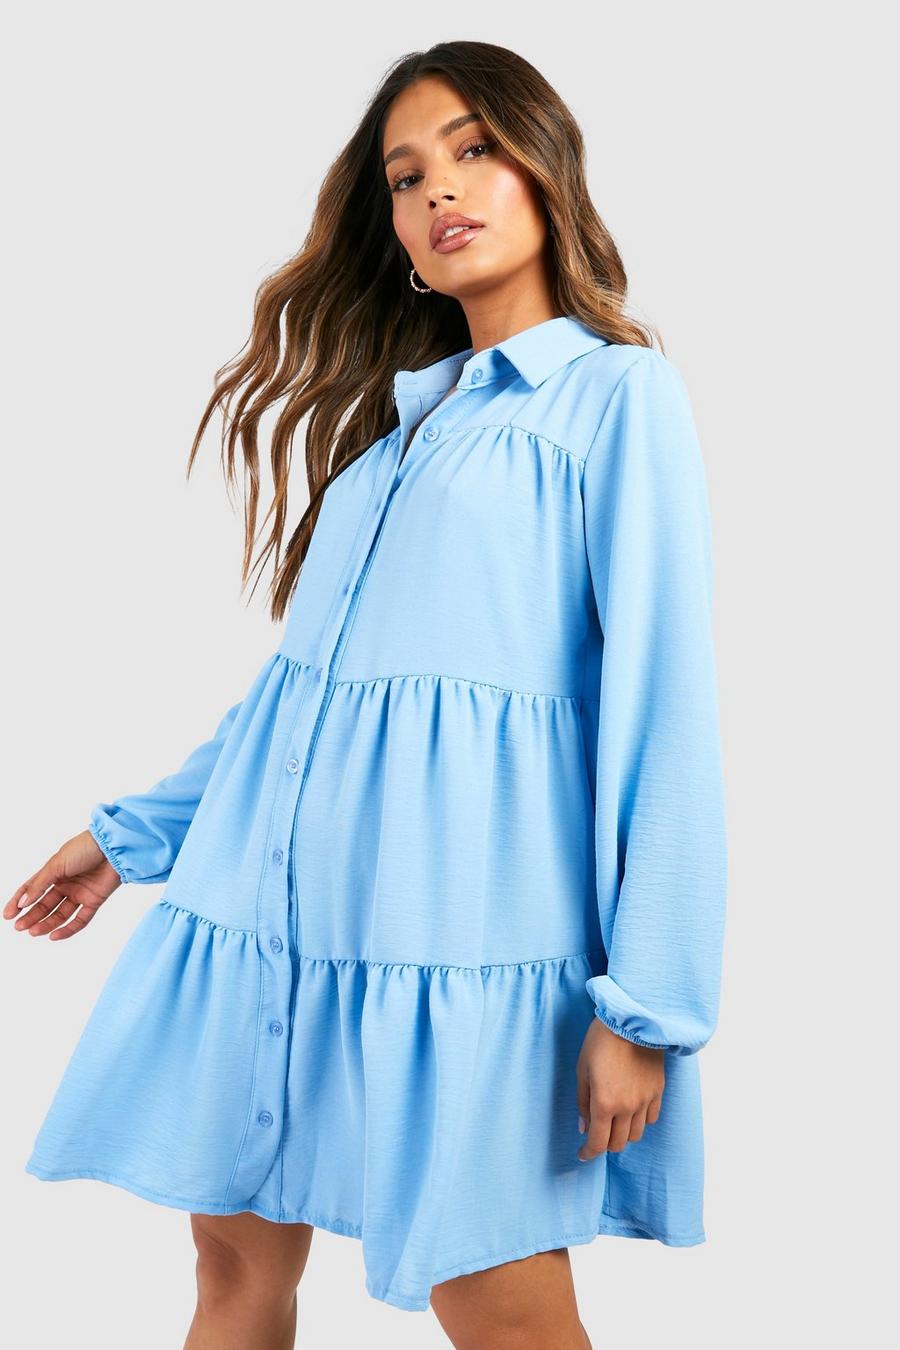 Powder blue azul Textured Smock Shirt Dress